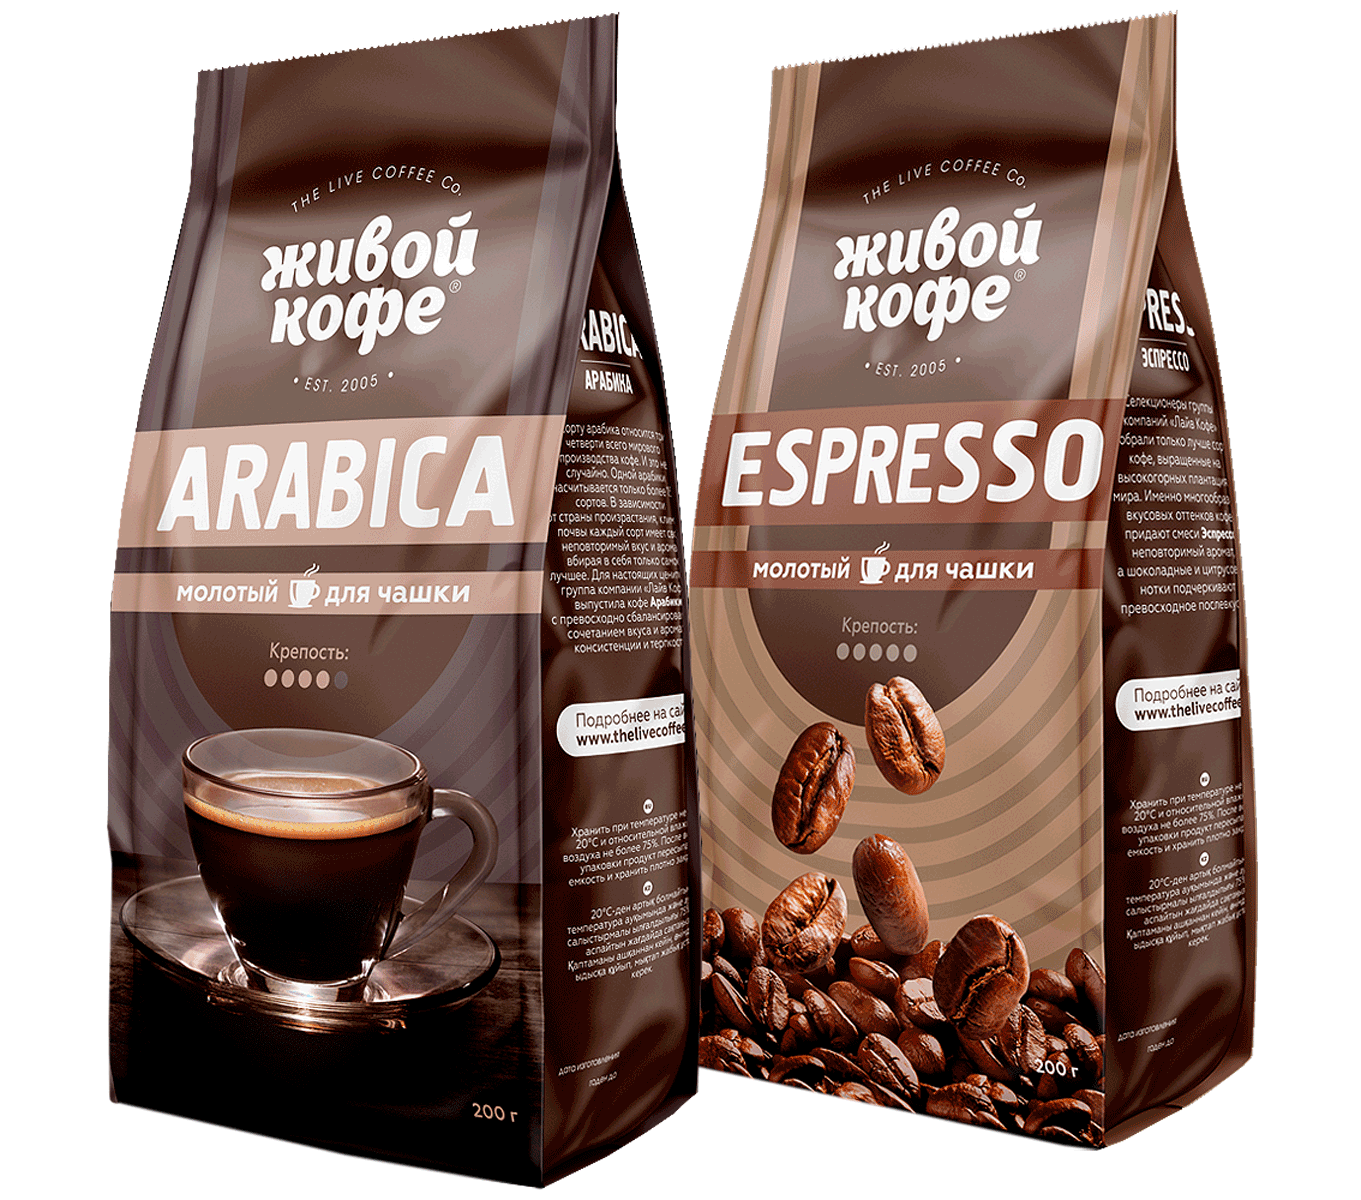 Купить зерновой кофе для кофемашины недорого. Живой кофе Арабика в зернах. Кофе Арабика эспрессо. Упаковка кофе в зернах. Марки кофе в зернах.